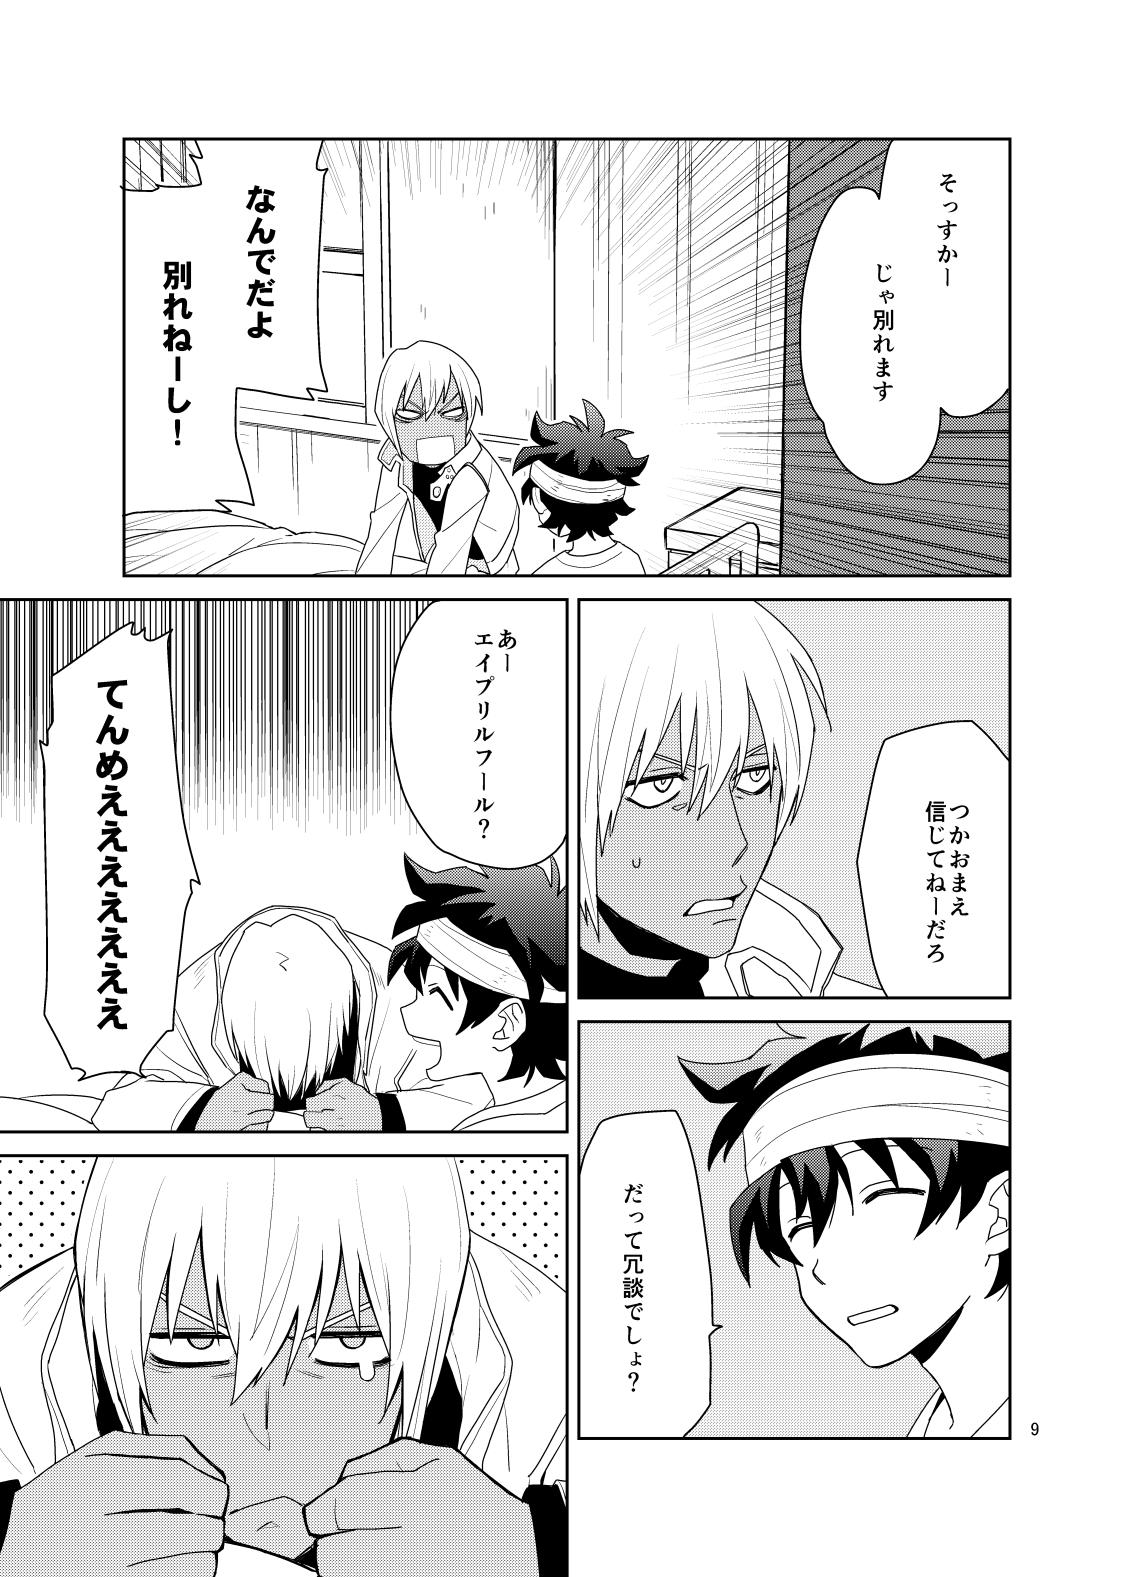 Hottie Shinkoku na Error ga Hasseishimashita. - Kekkai sensen Gaygroup - Page 8